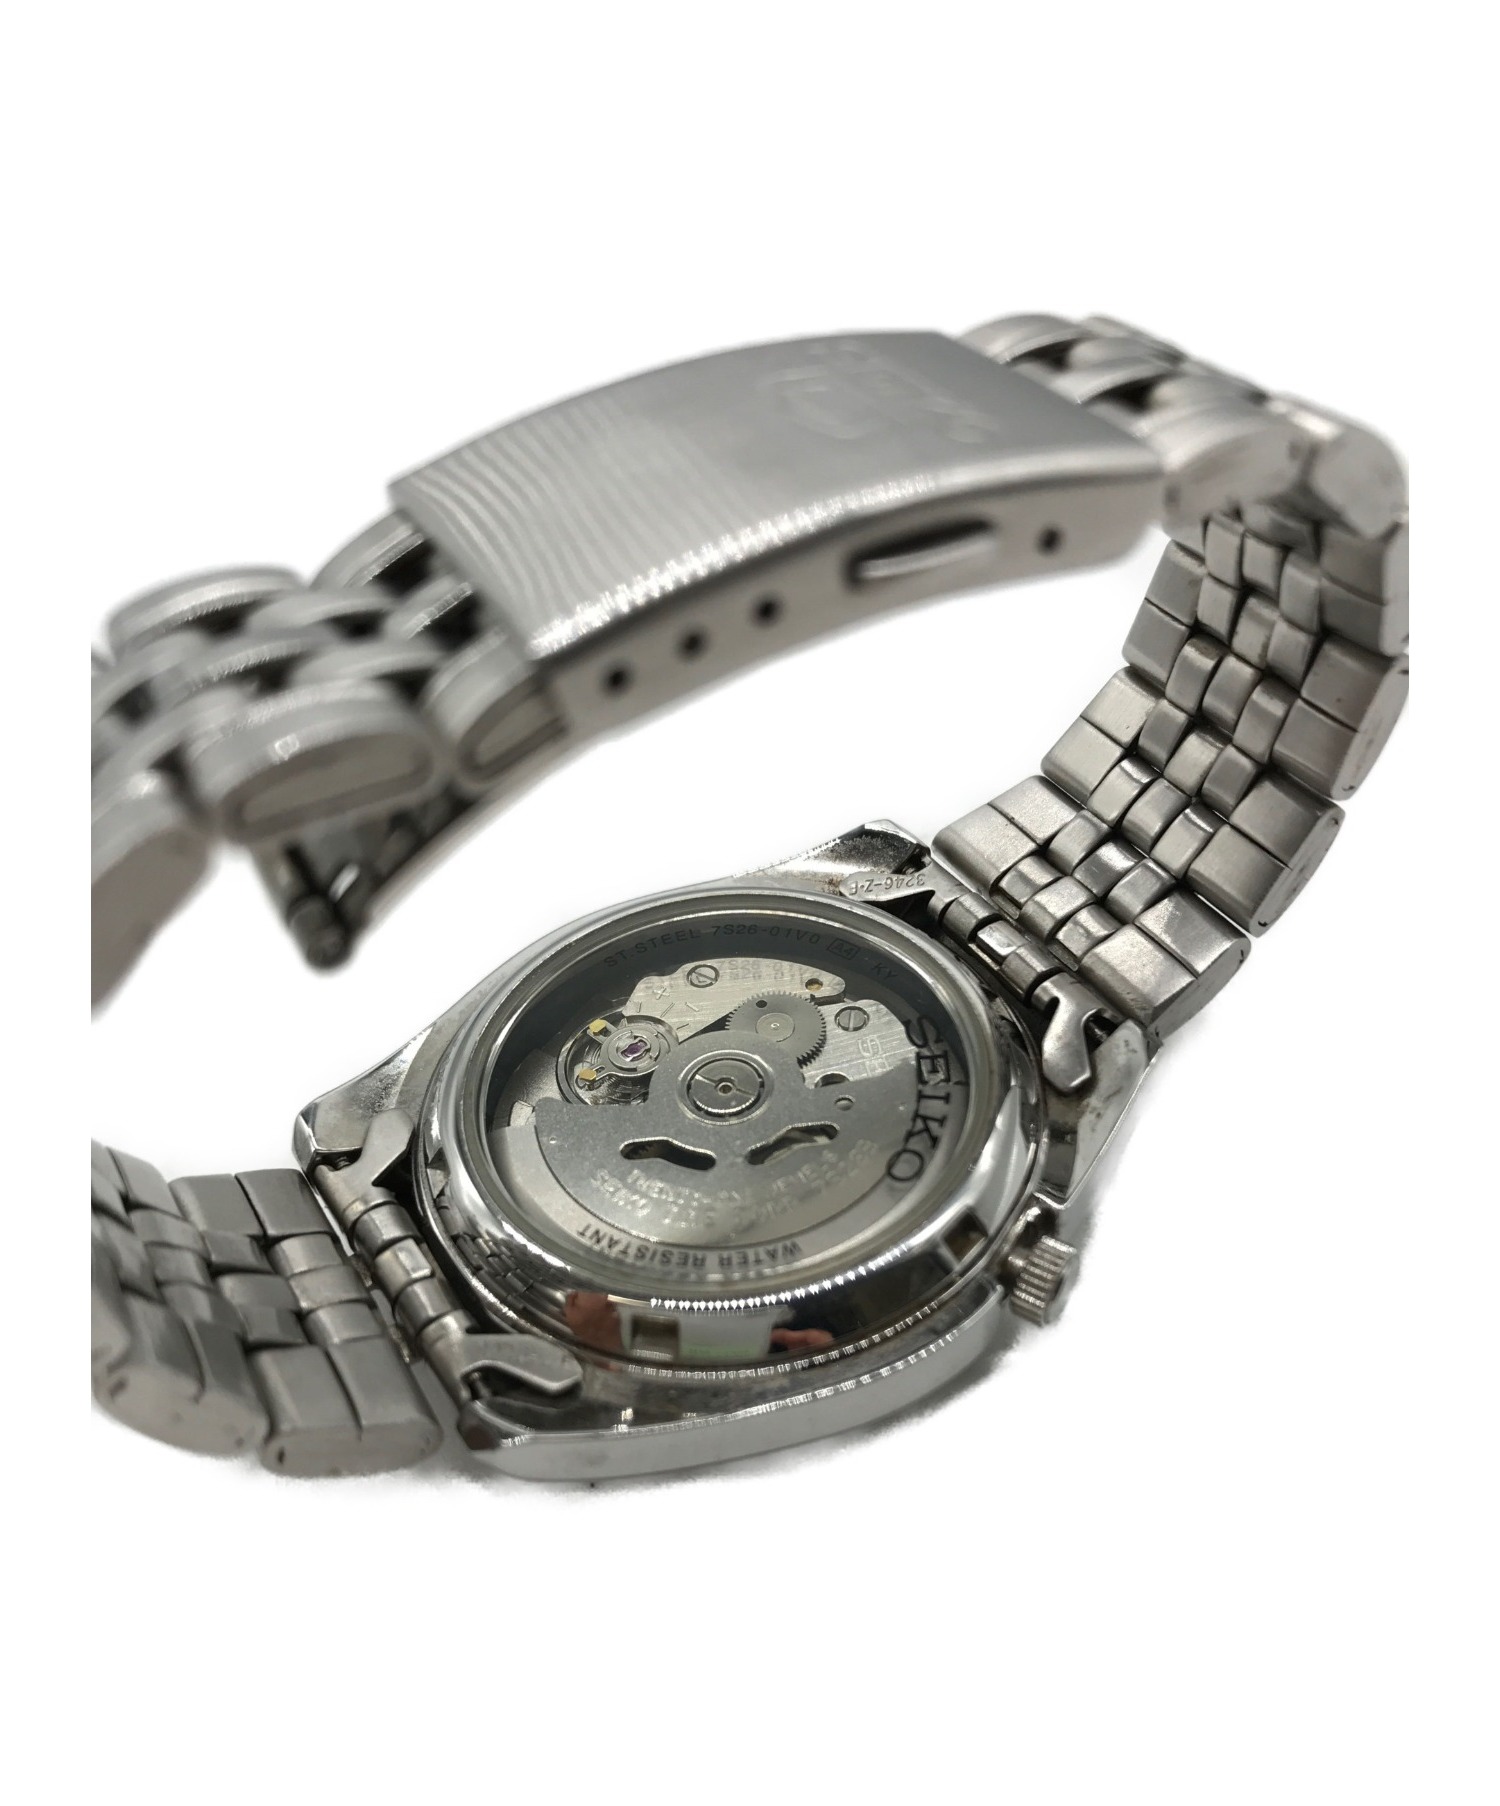 SEIKO (セイコー) 腕時計 サイズ:不明 スポーツファイブ 7S26-01V0 自動巻き 動作確認済み